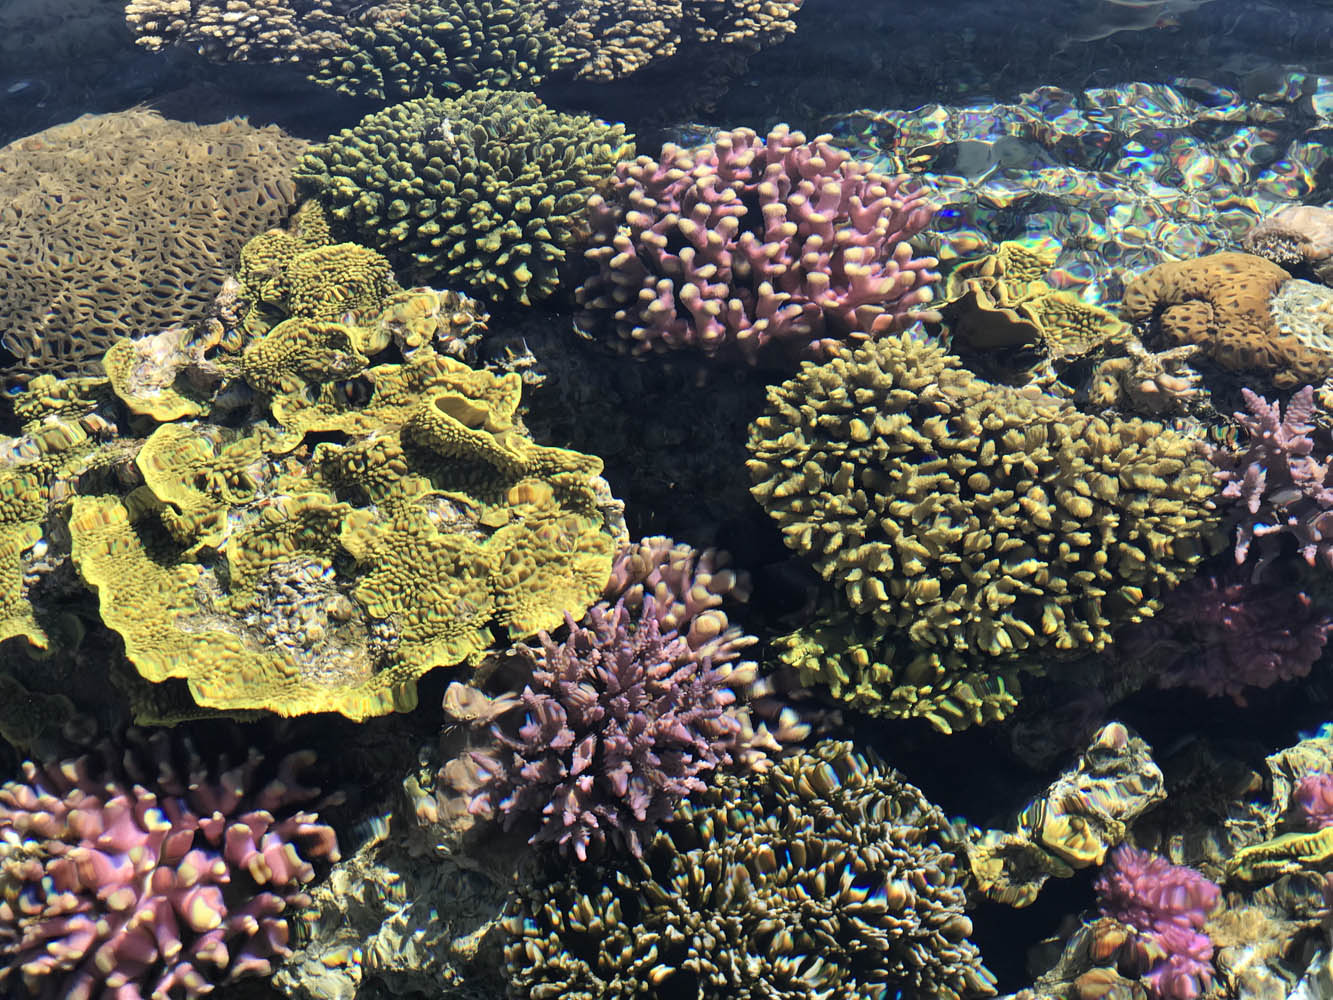 Живые кораллы подводной обсерватории в Эйлате поражают своей красотой. 4 июня 2018